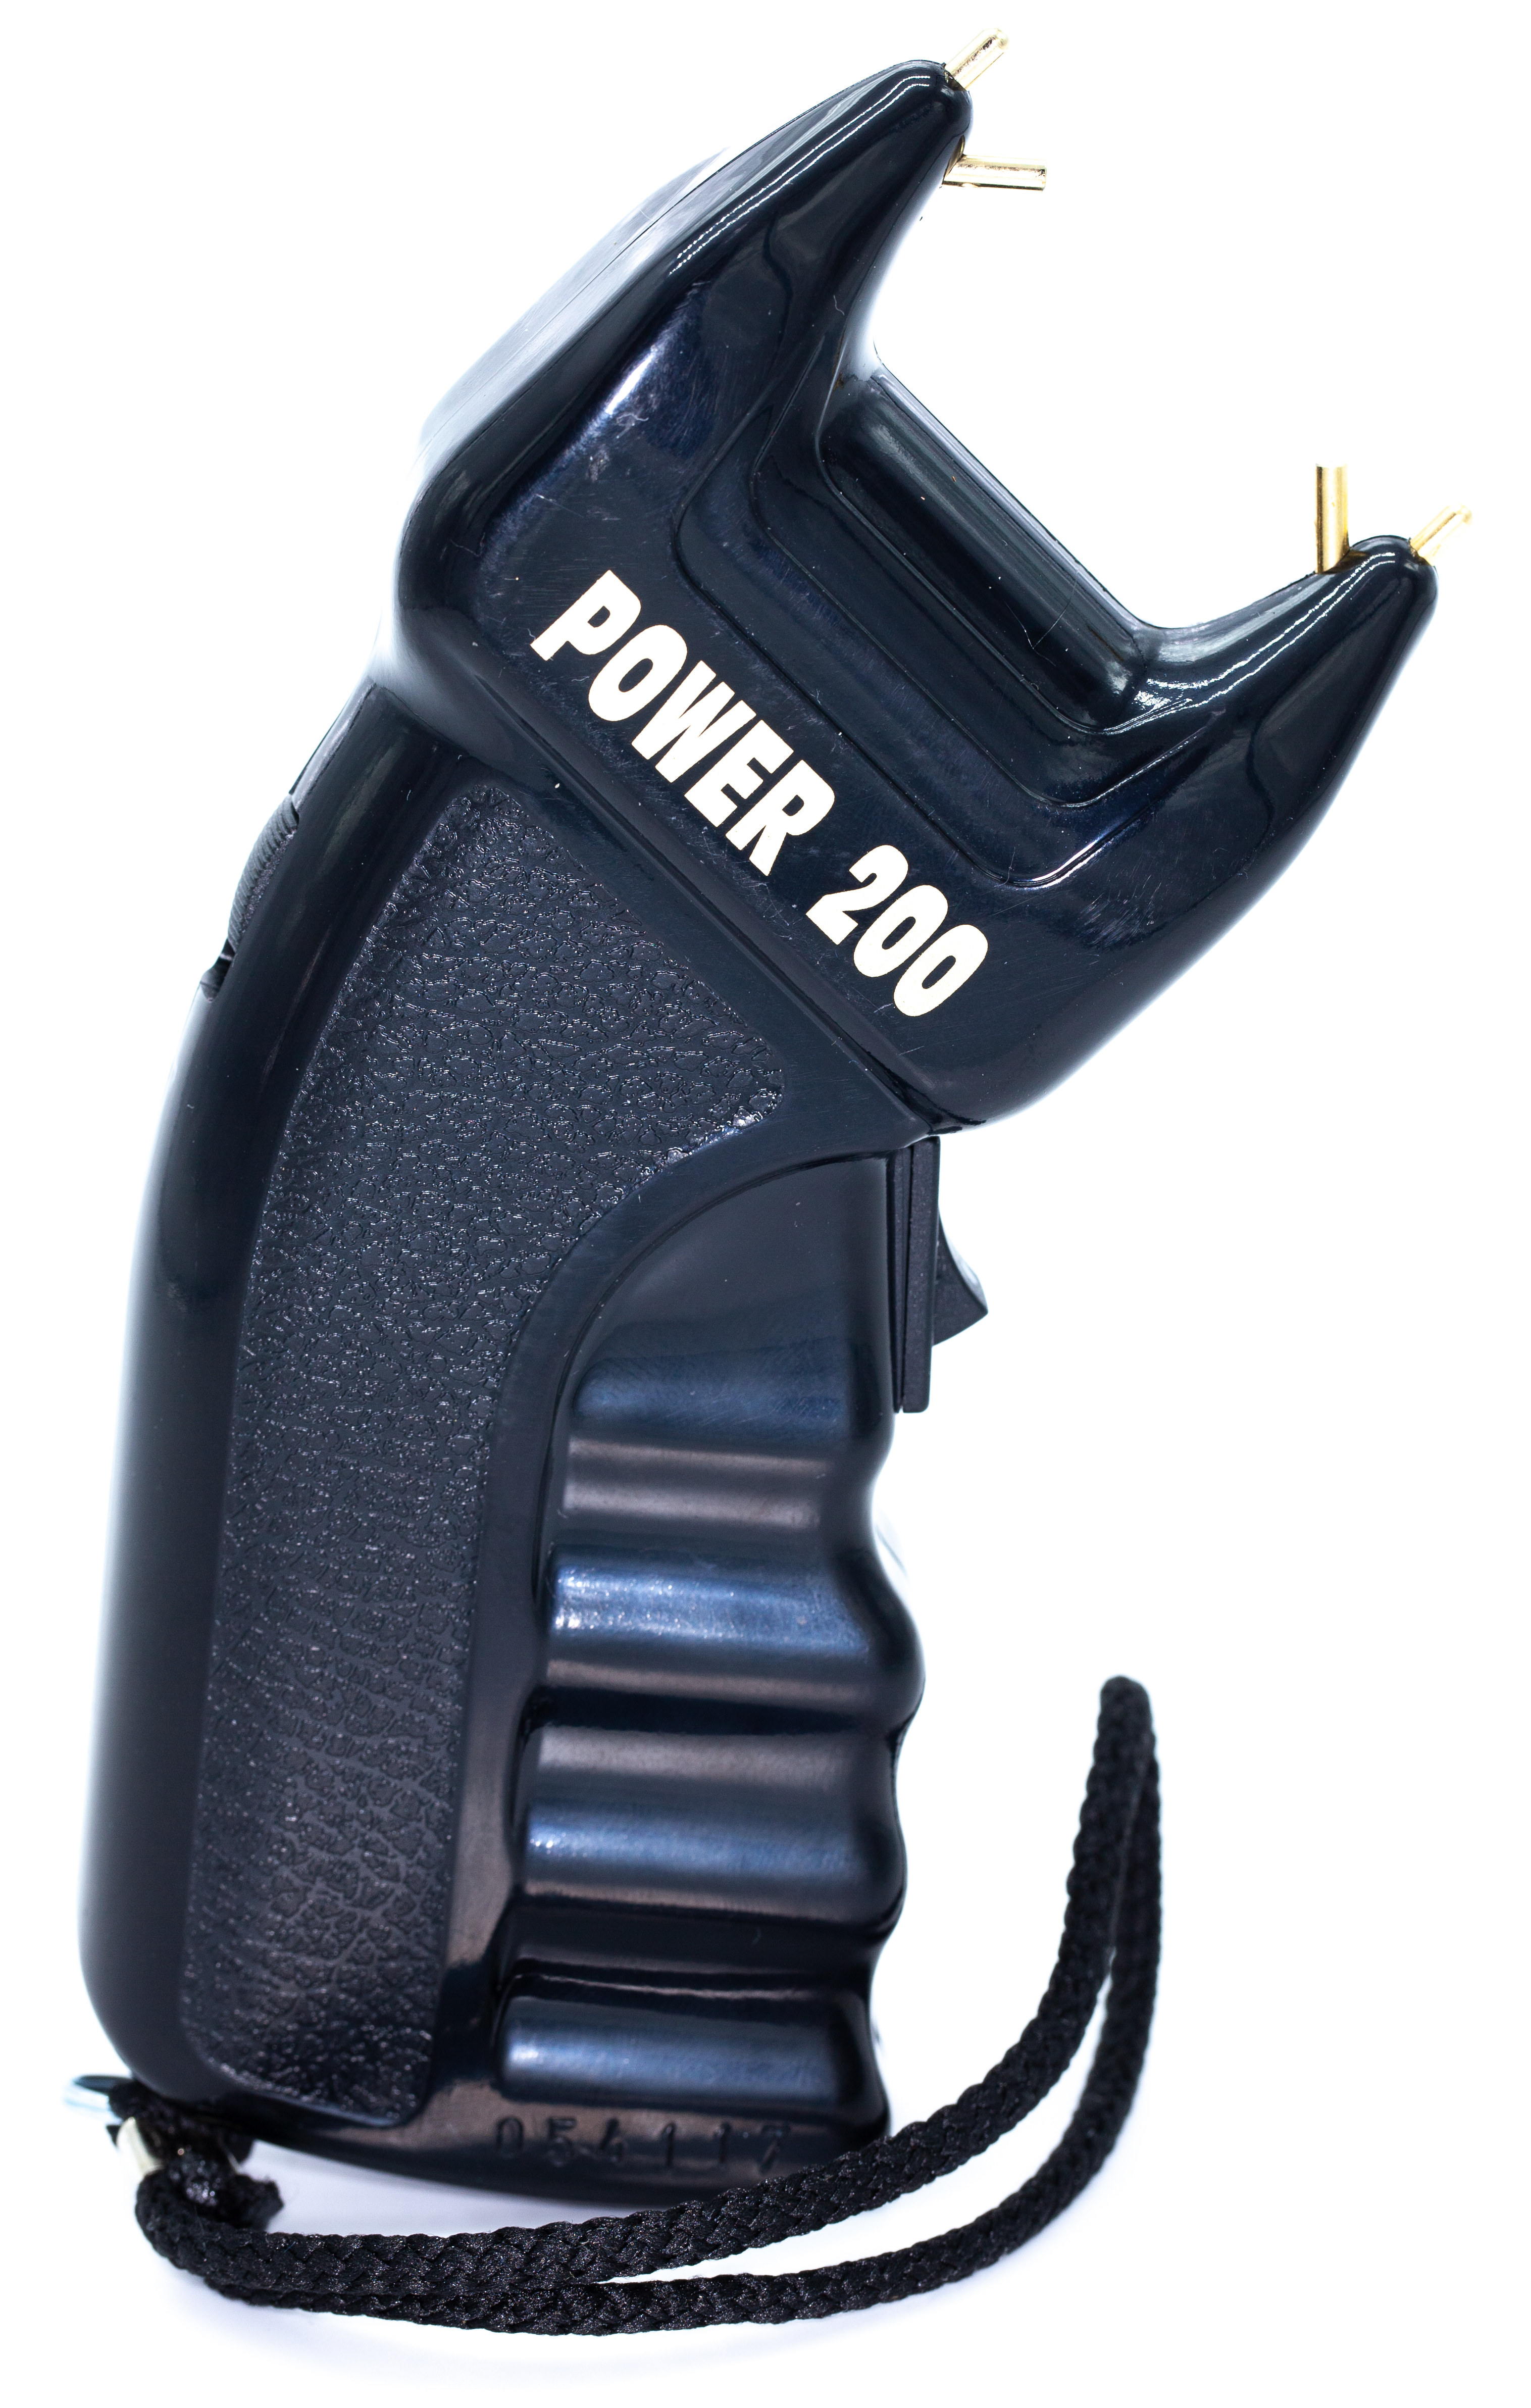 Elektroschocker Power 200 PTB mit 200.000 Volt kaufen